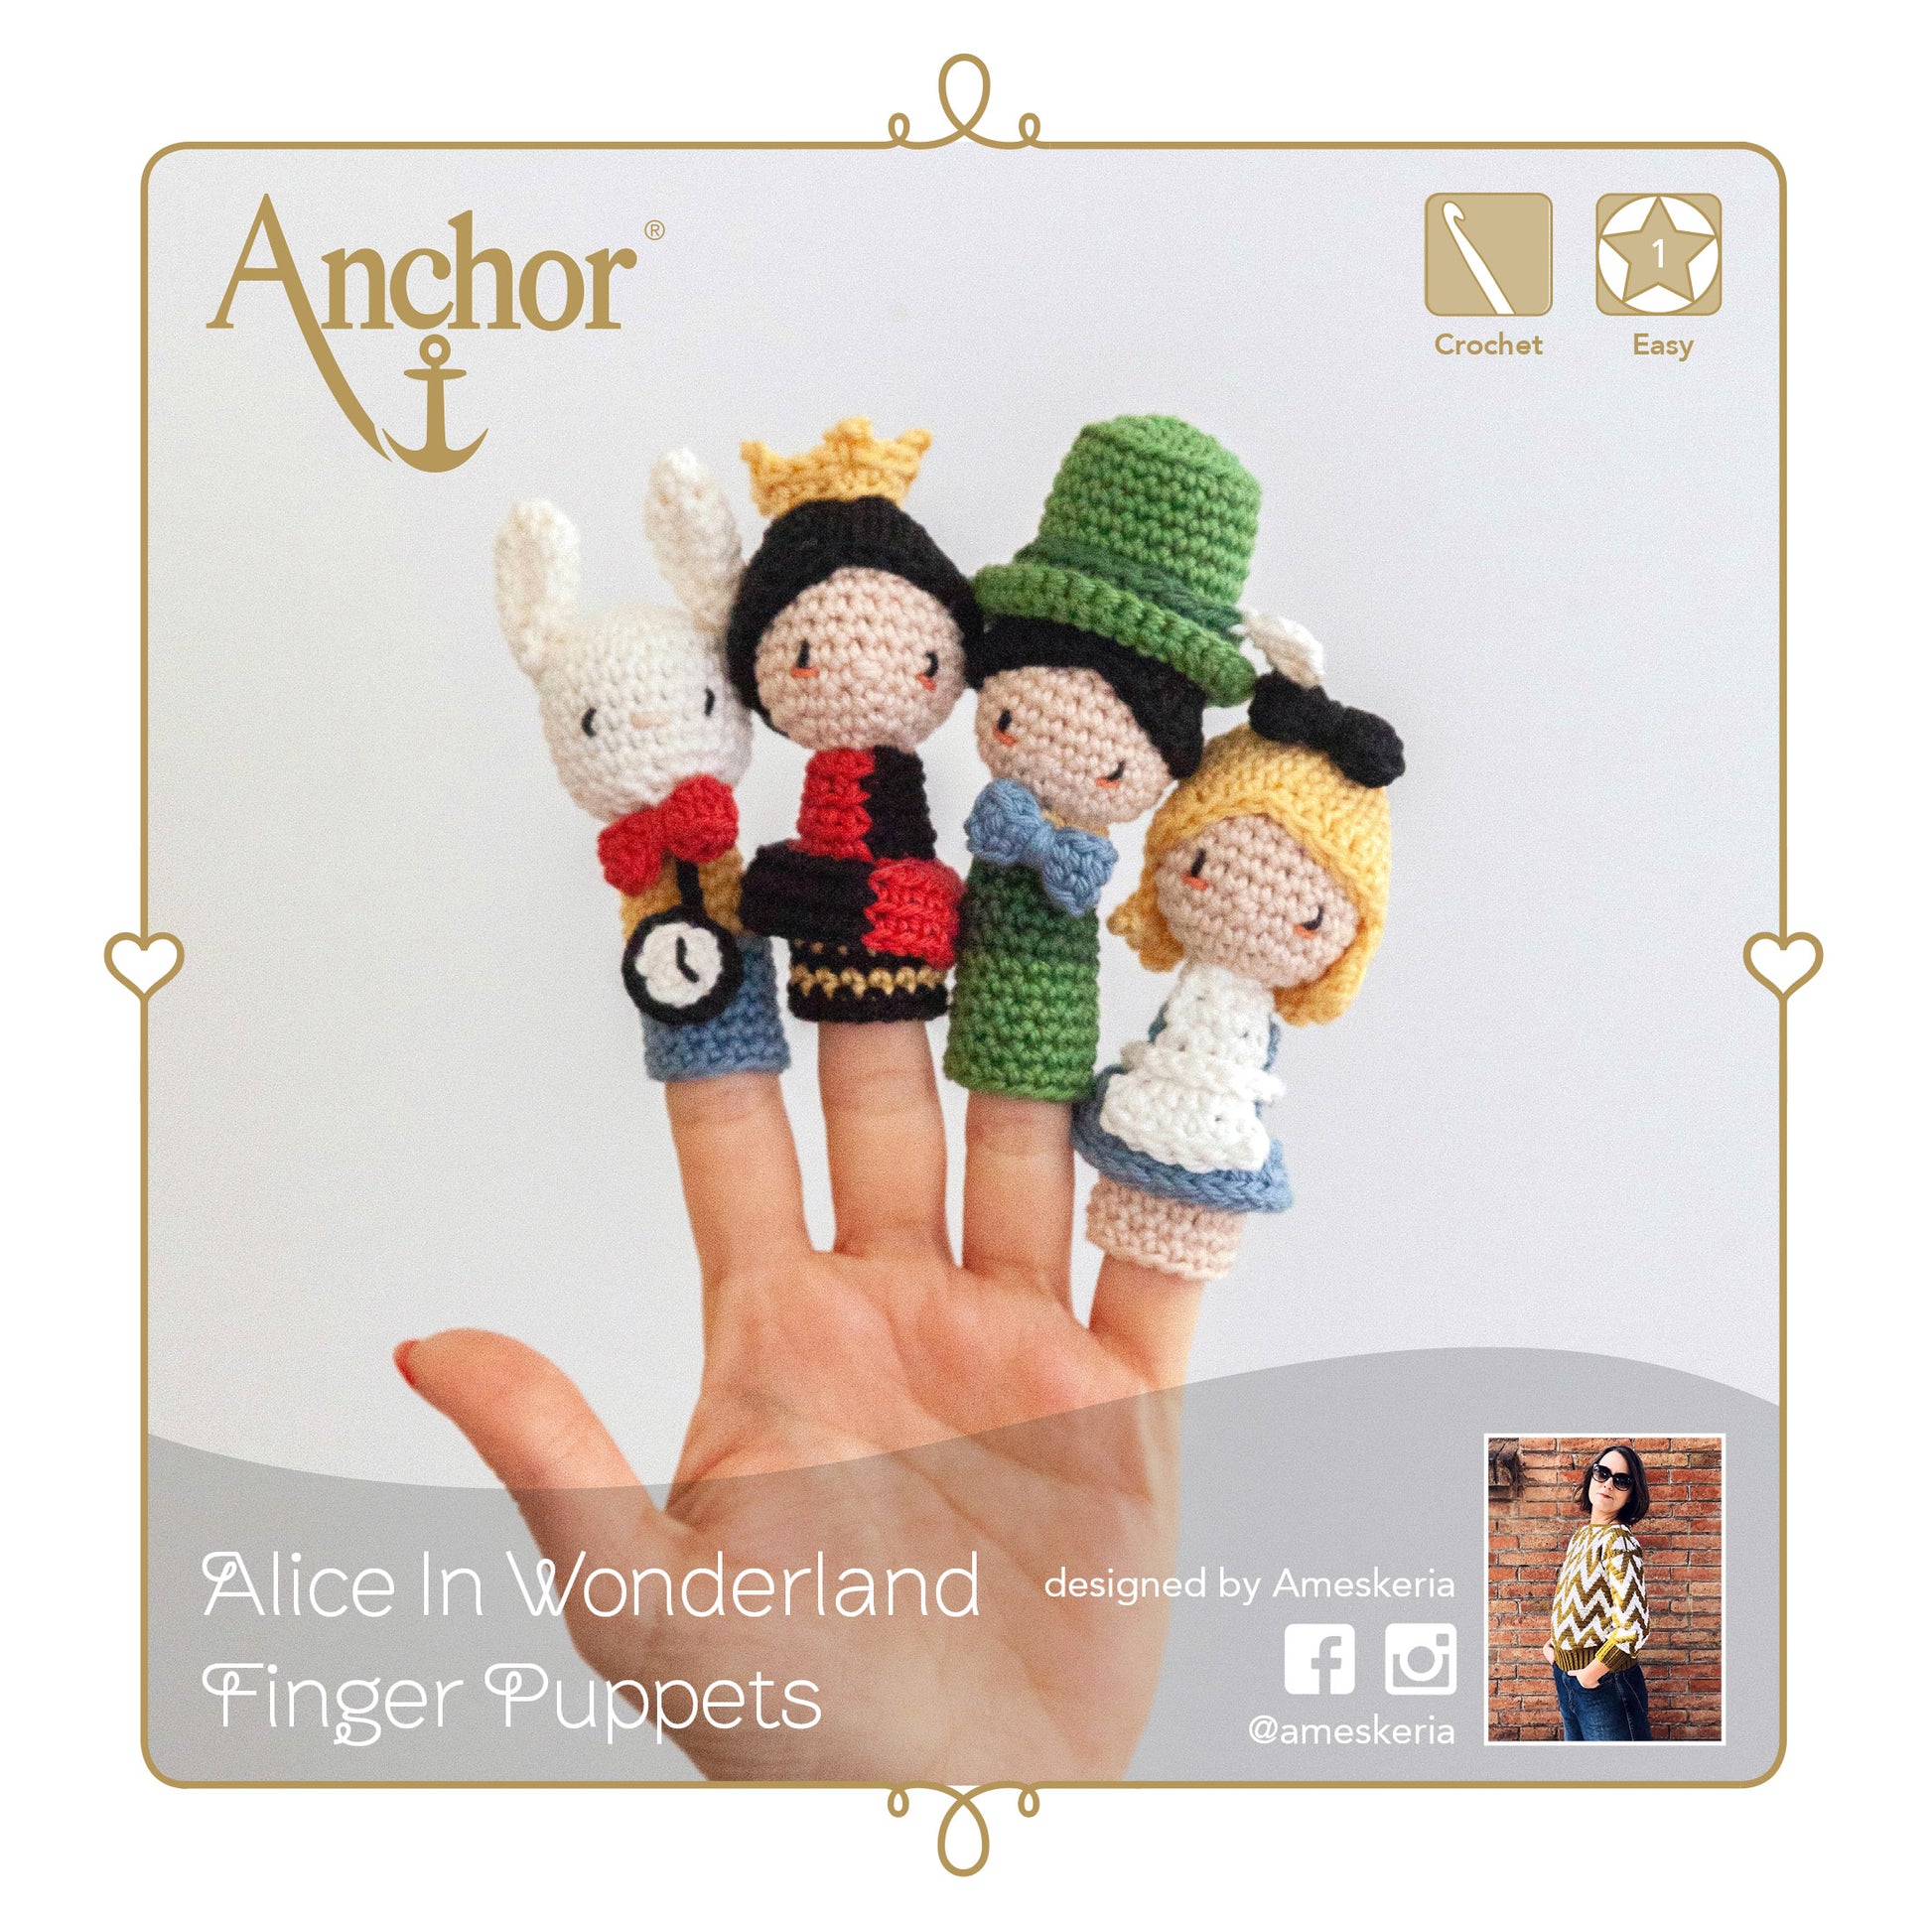 Información Kit de crochet para crear 4 marionetas de dedo de los personajes de "Alicia en el País de las Maravillas" de Anchor